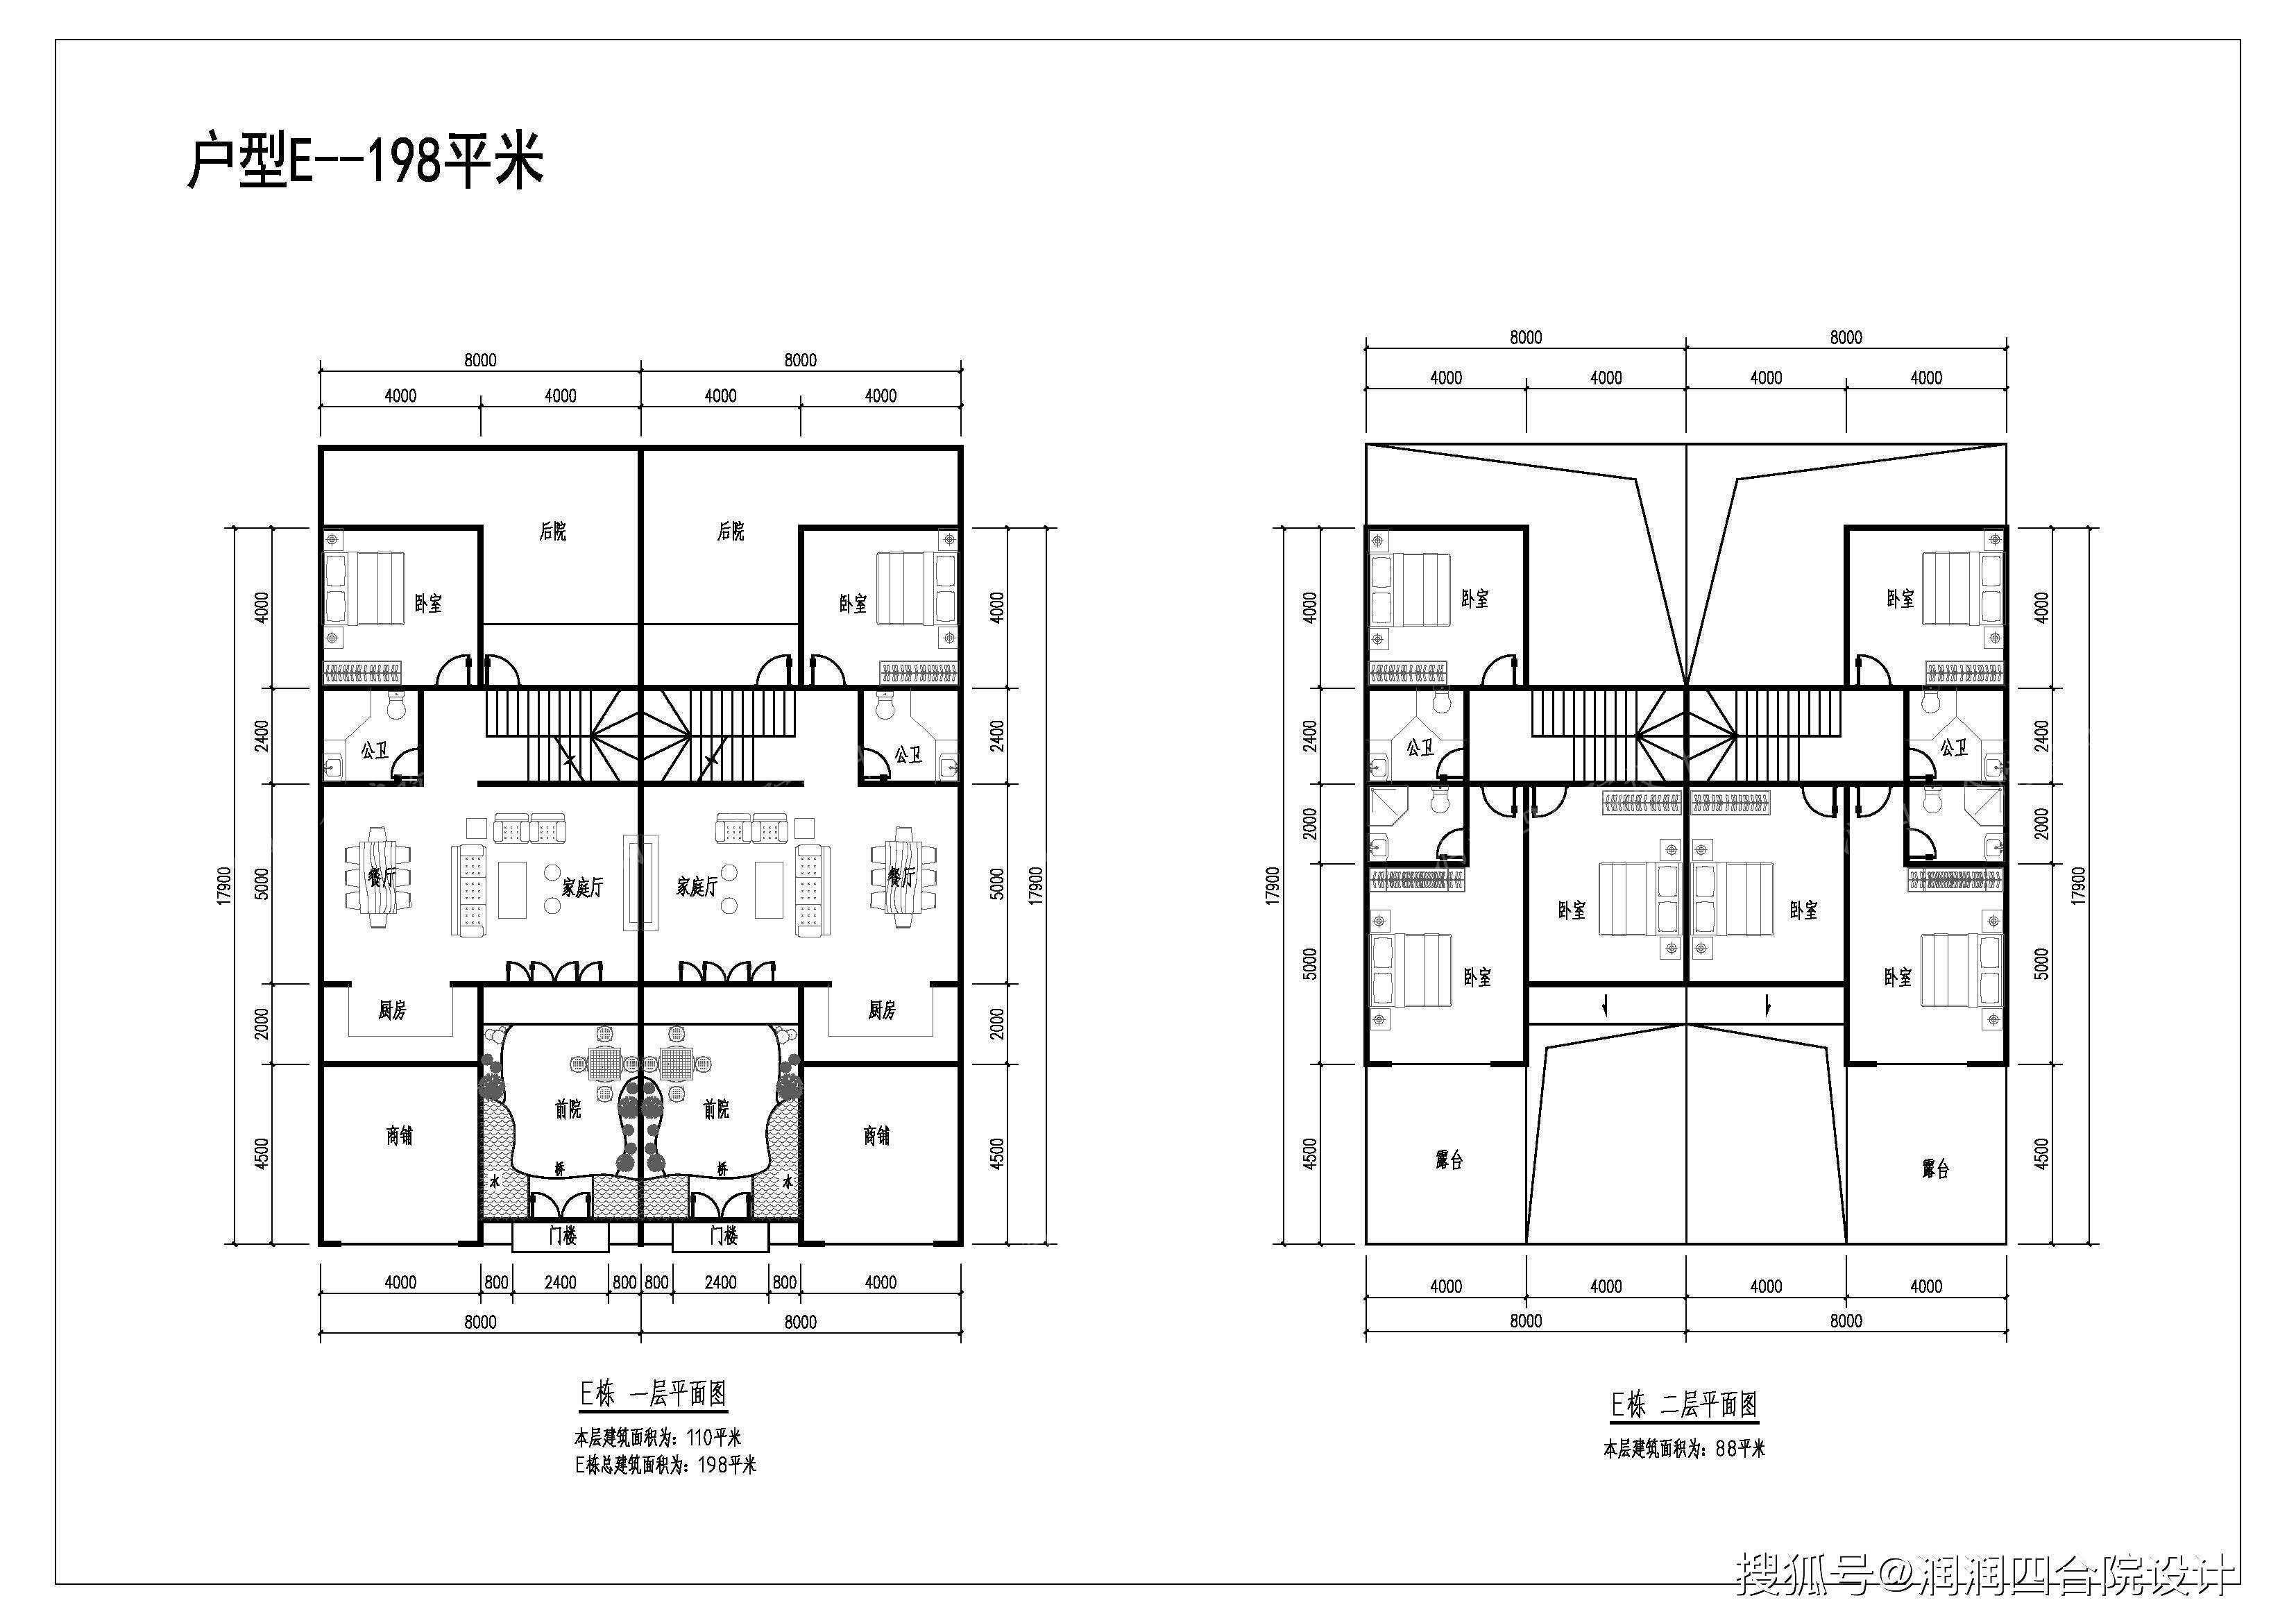 双拼式小户型合院平面图——润润四合院设计总体楼盘规划:共设计了6个